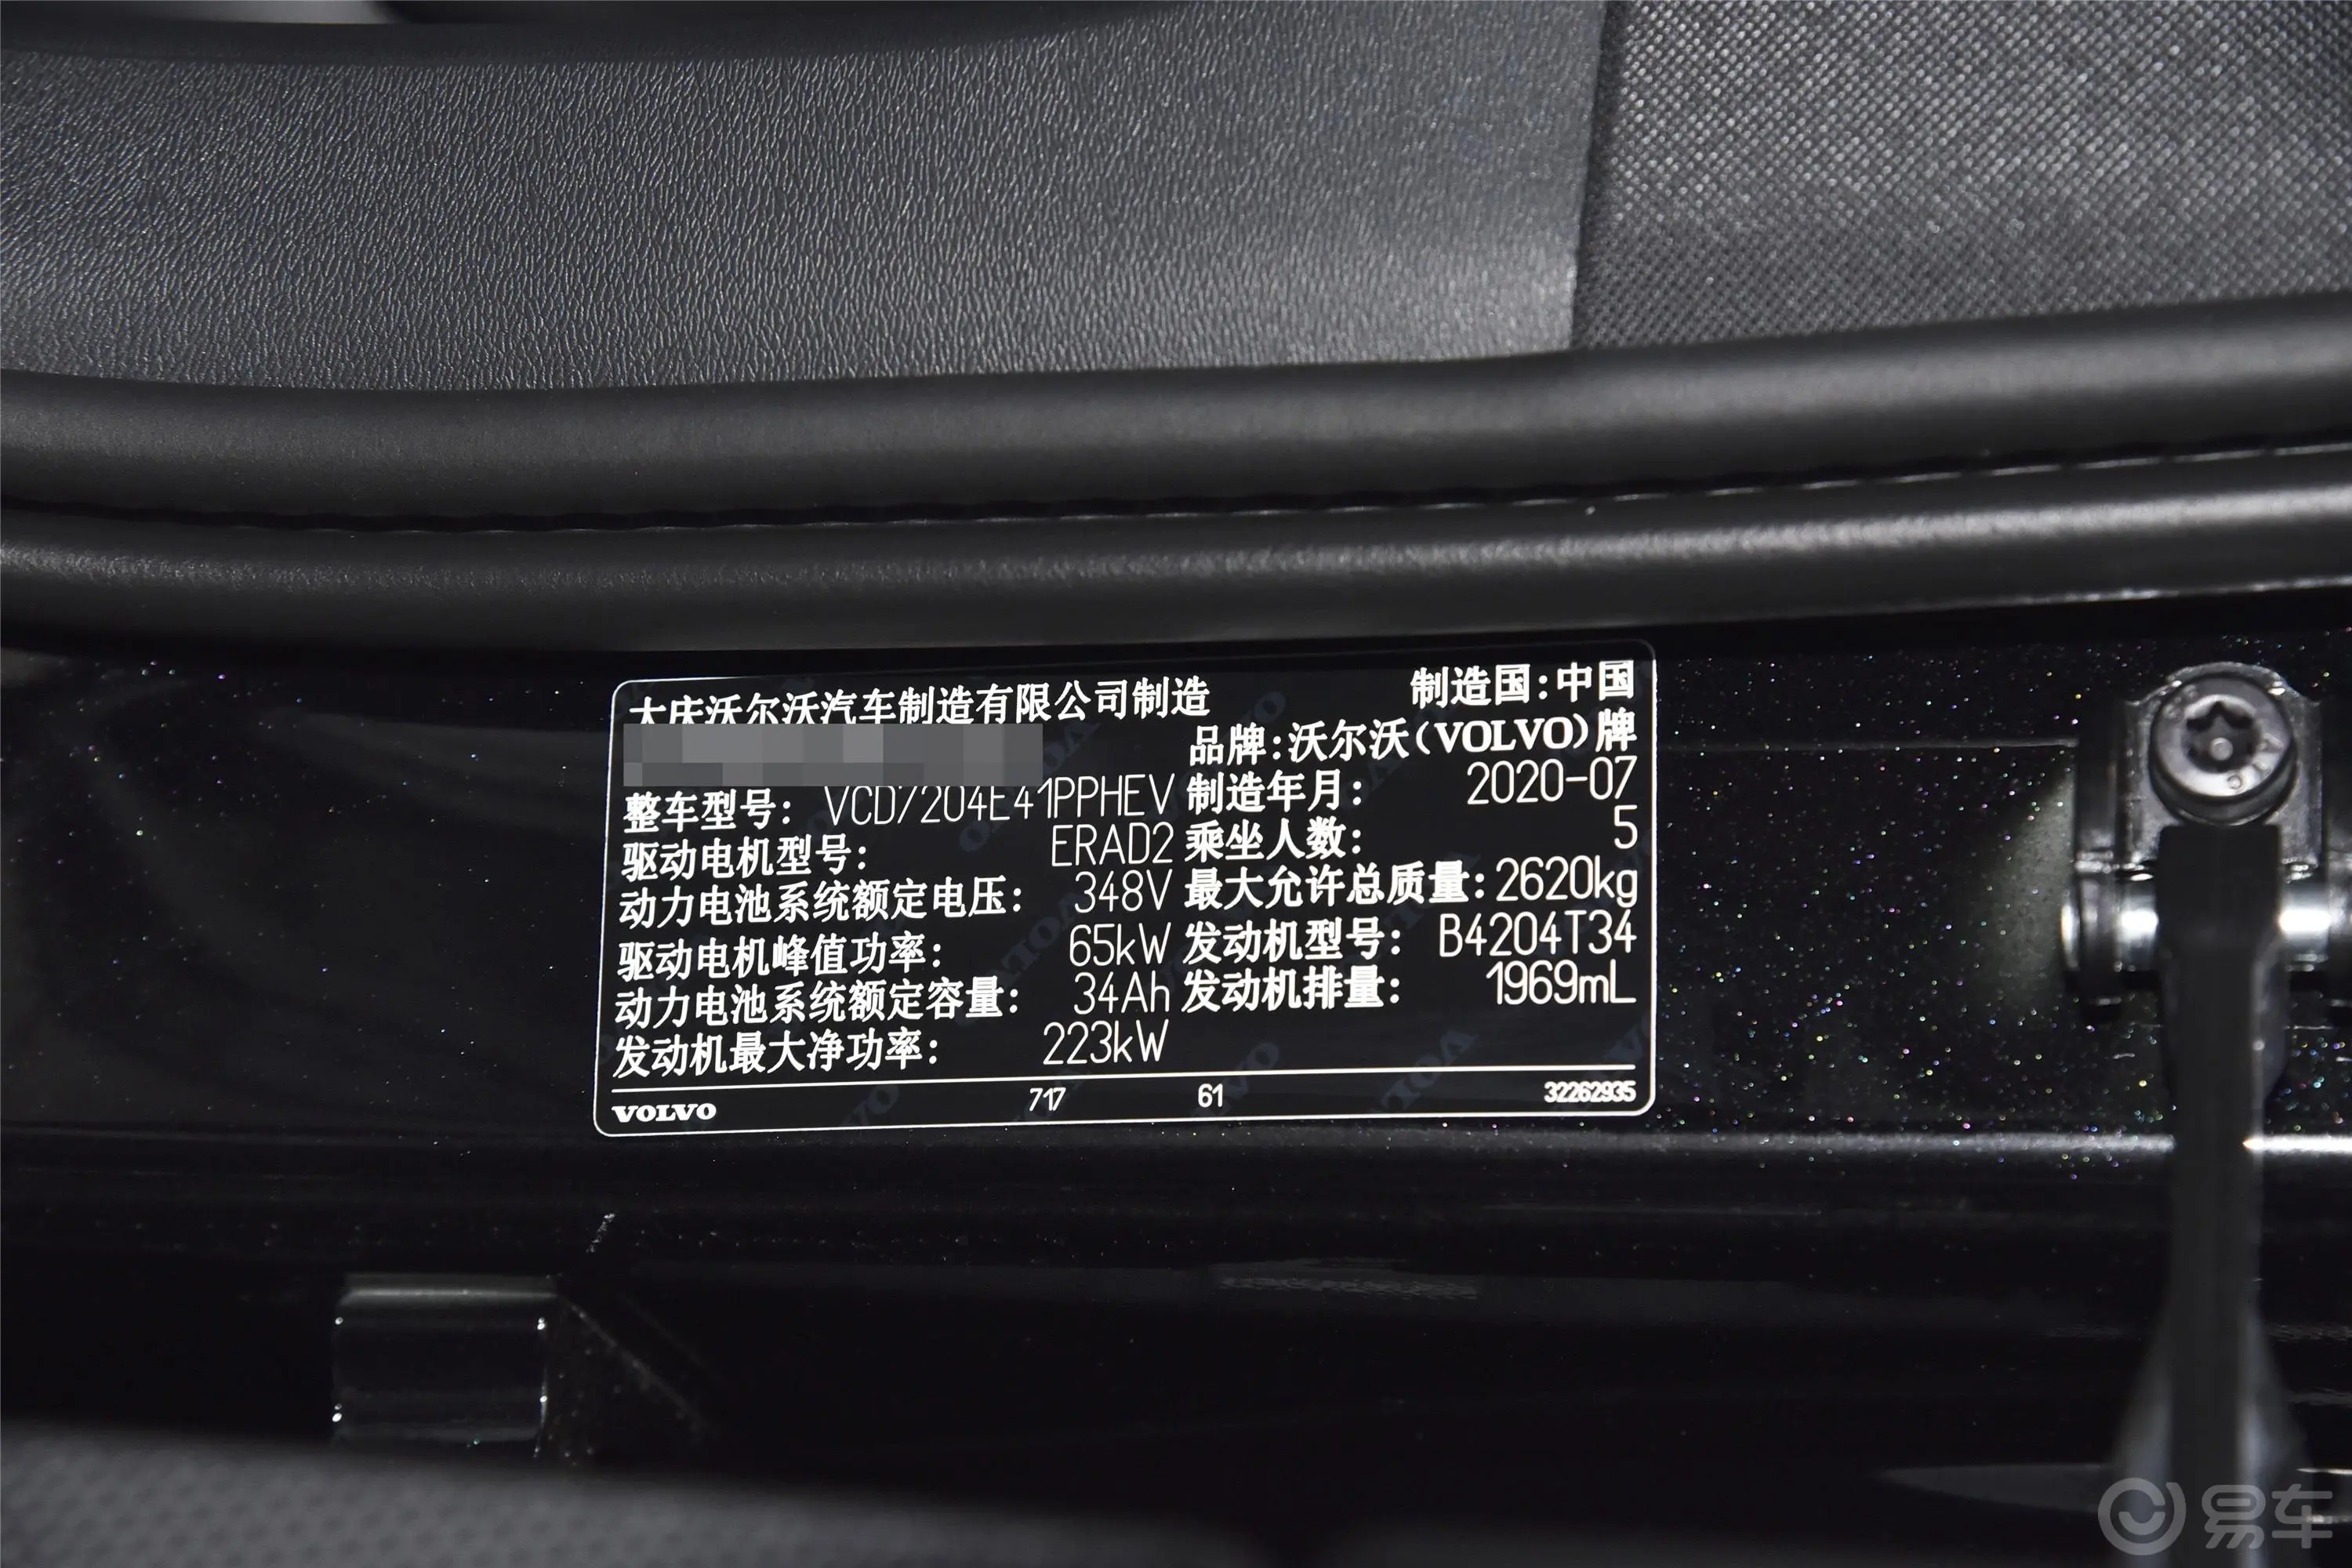 沃尔沃S90 RECHARGET8 智逸豪华版车辆信息铭牌